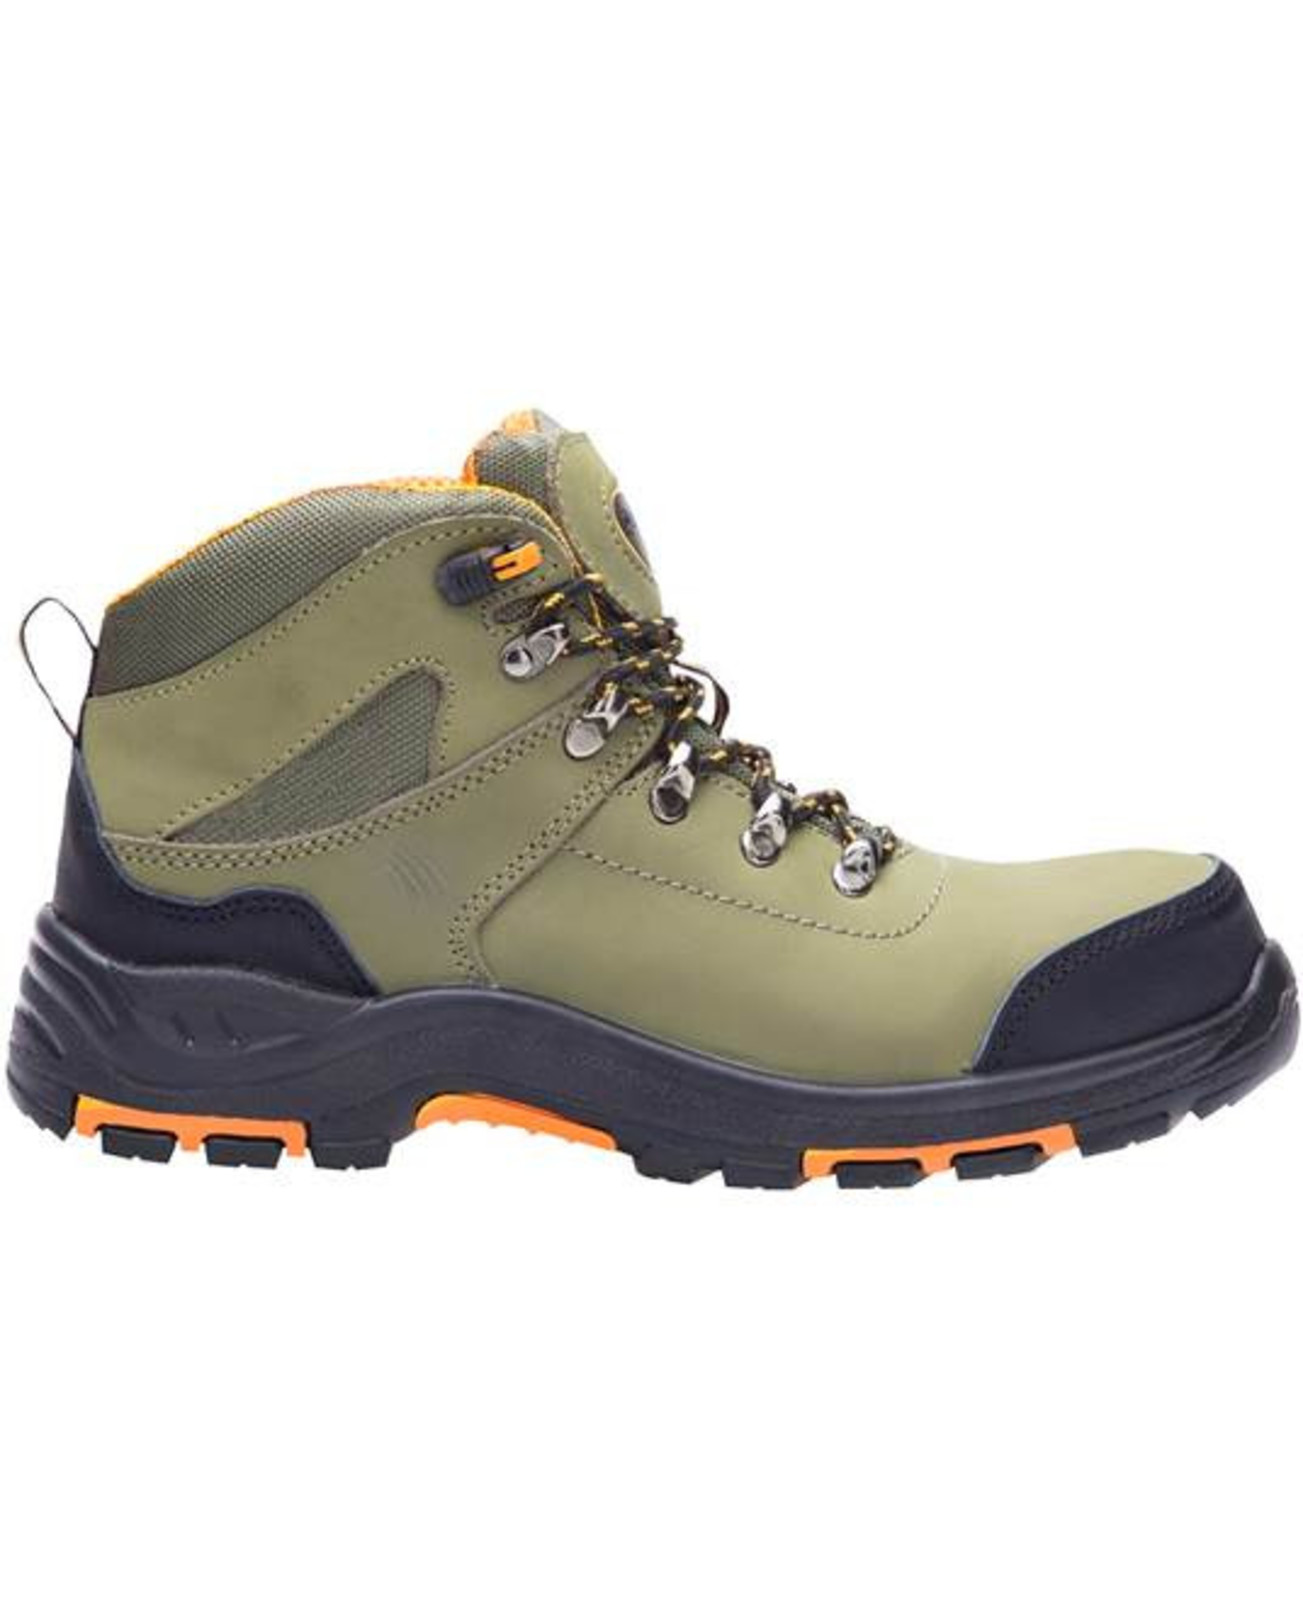 Bezpečnostná členková obuv Ardon Grinder S3 FO HRO SRC - veľkosť: 48, farba: khaki/oranžová